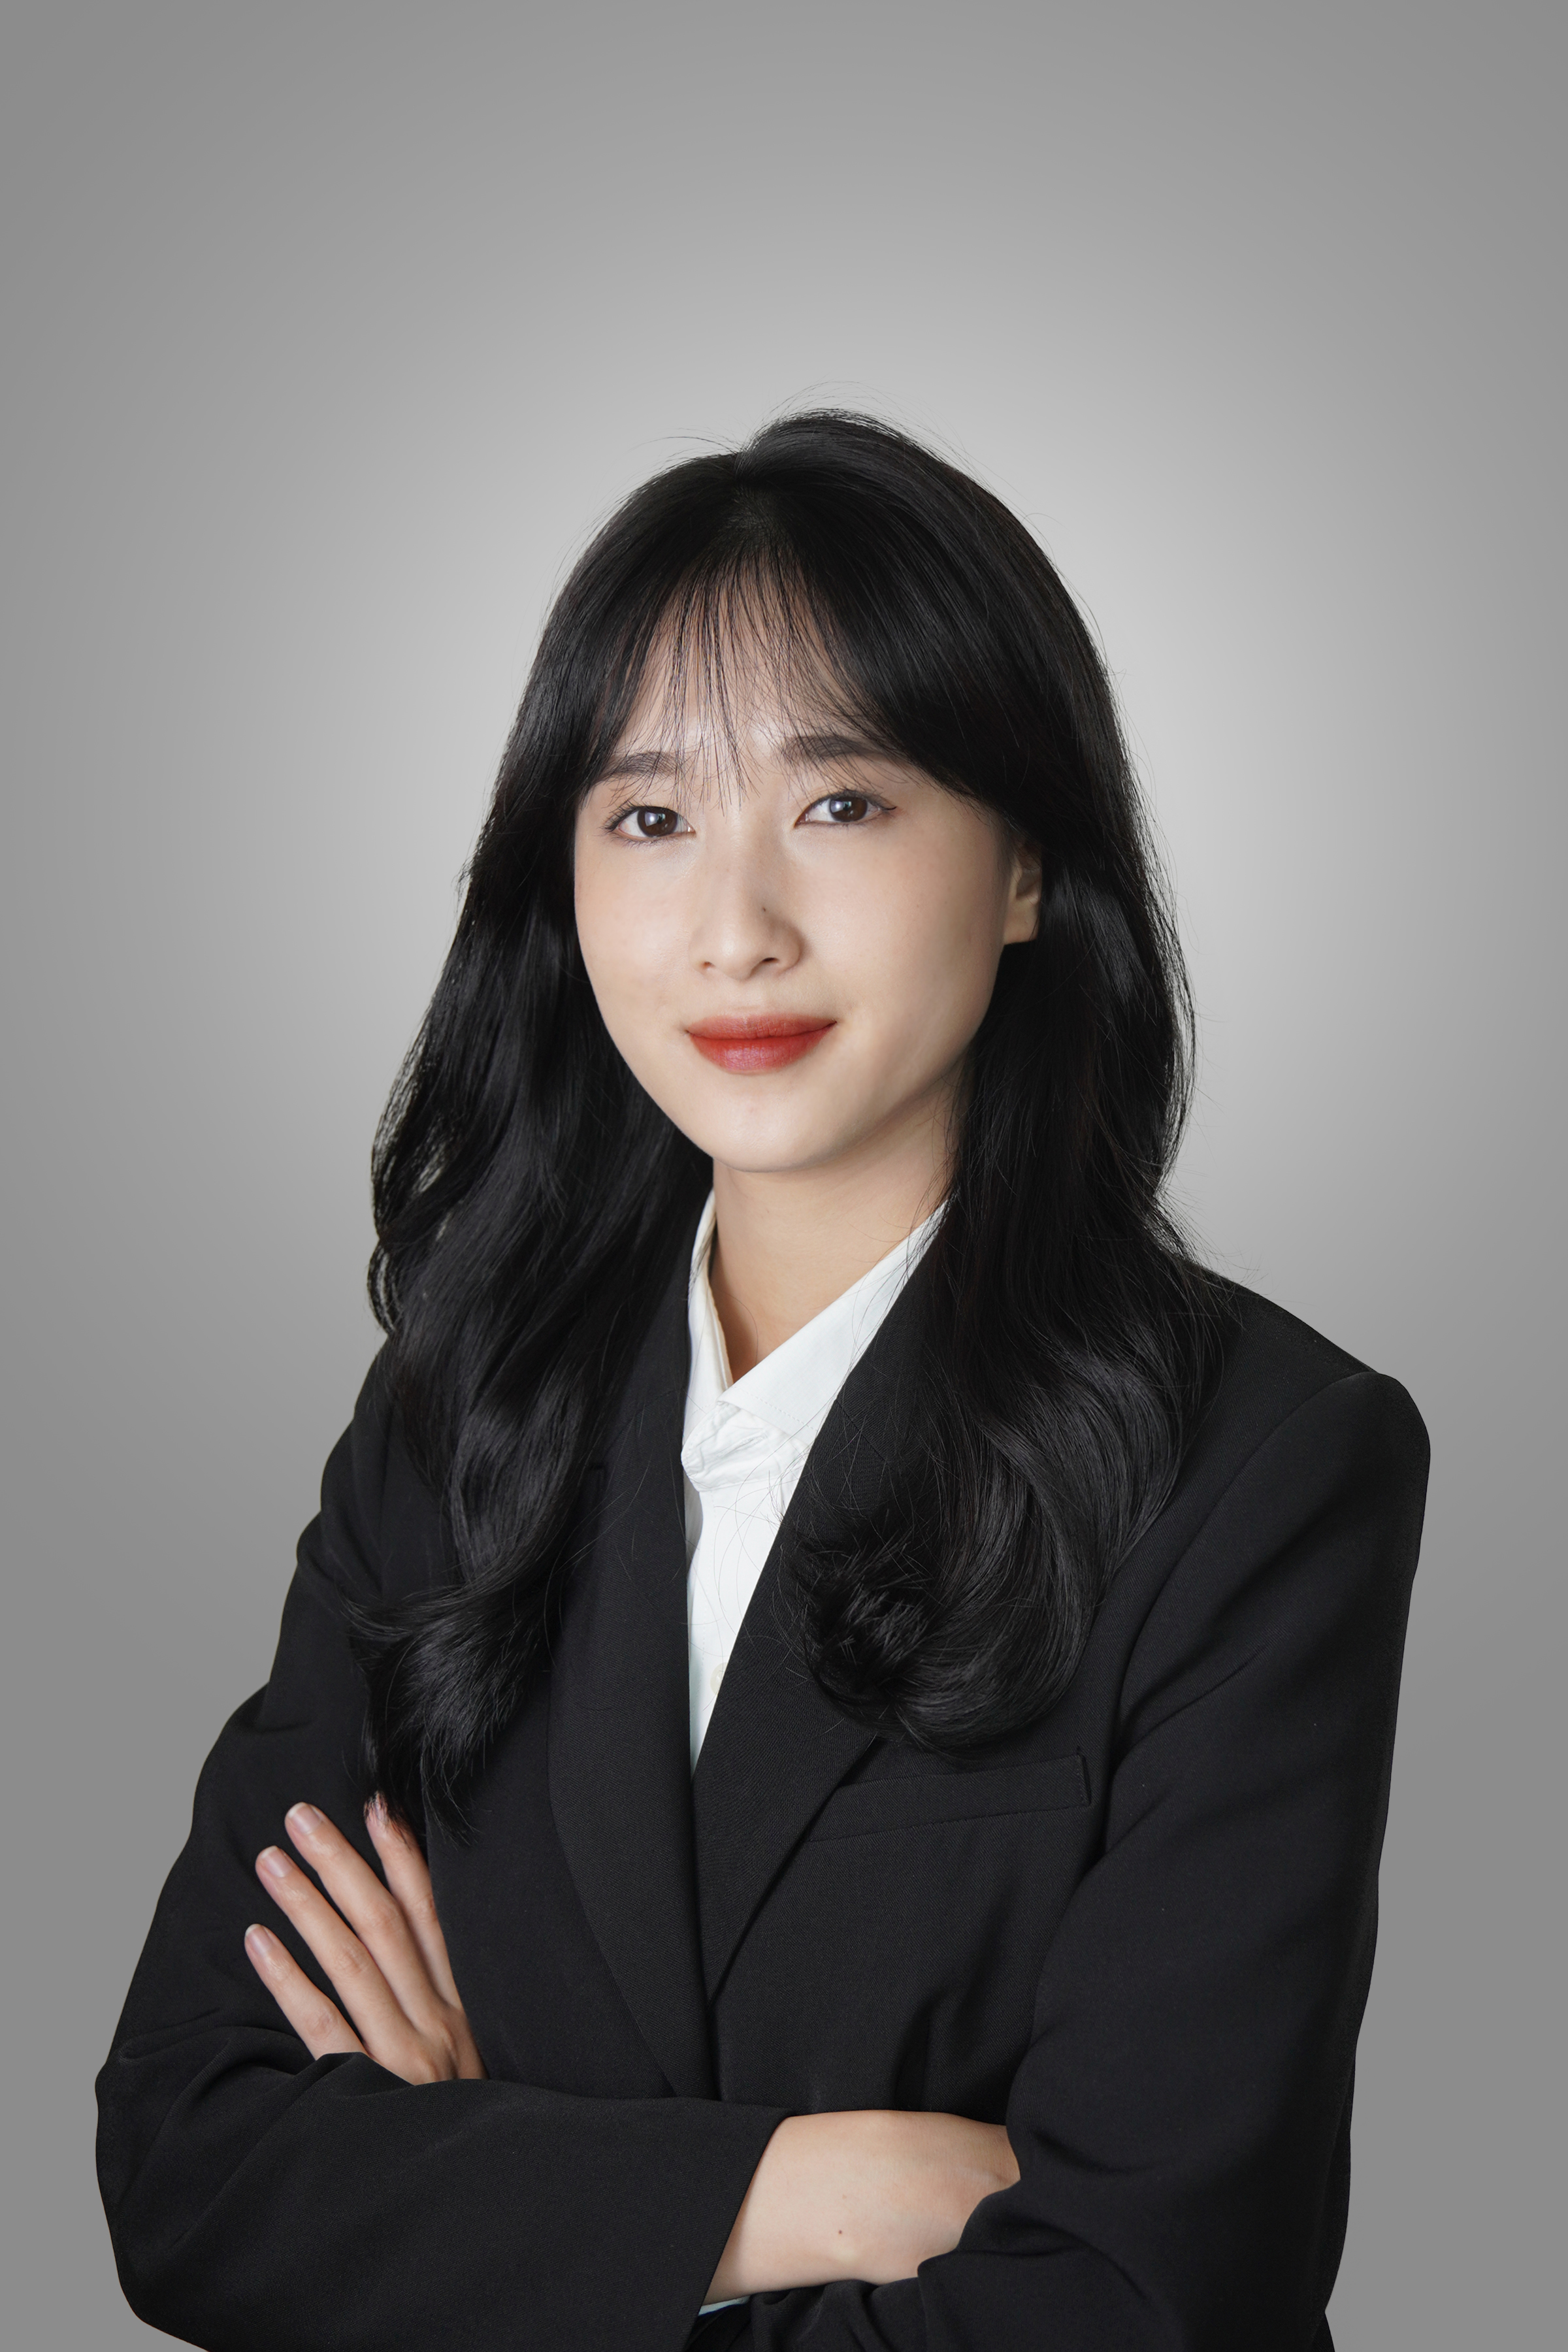 Ms. Trinh Hong Anh